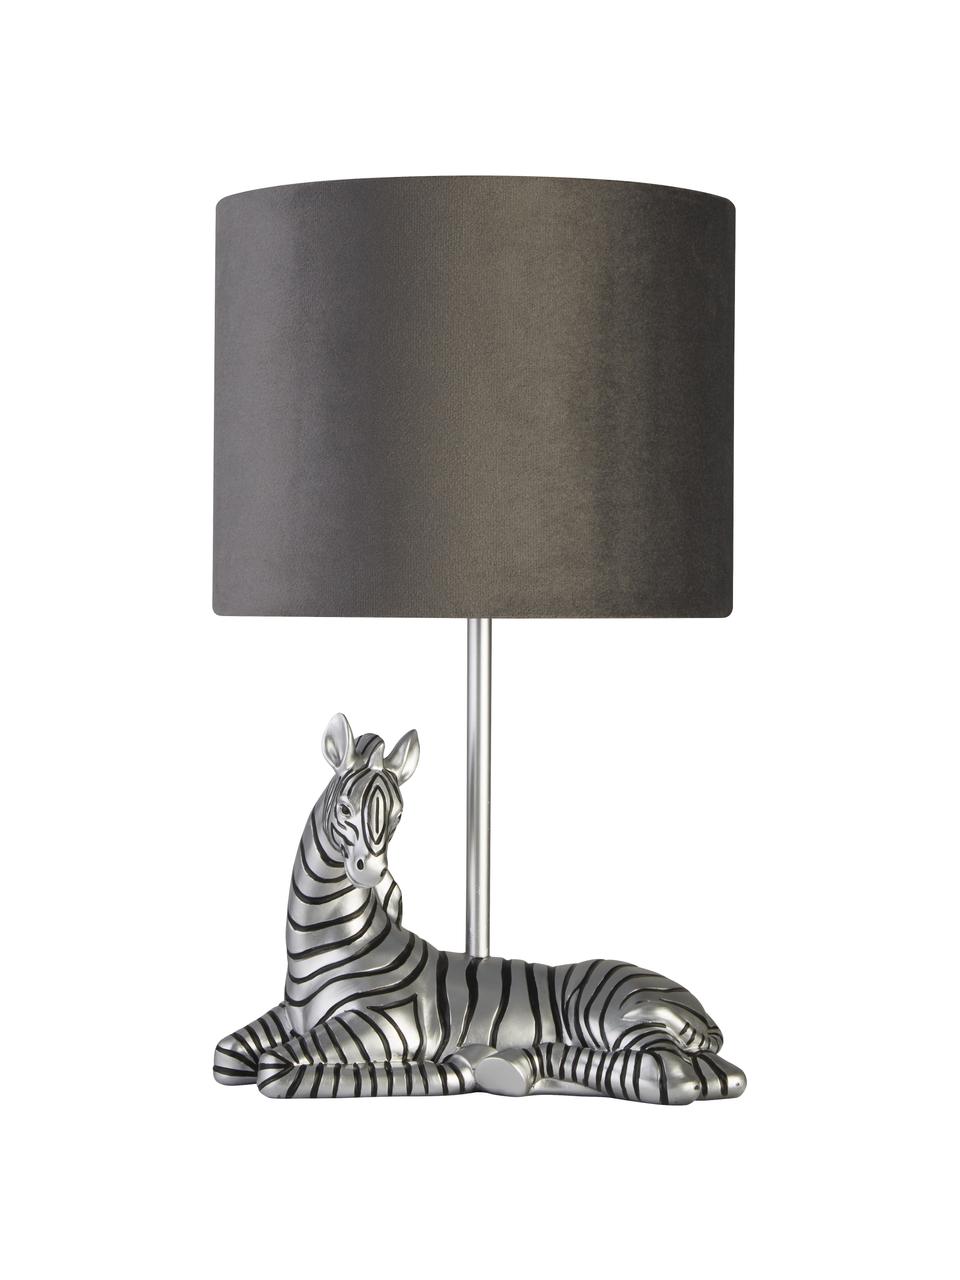 Design Tischlampe Zebra mit Samtschirm, Lampenschirm: Samt, Lampenfuß: Polyresin, Grau, Silberfarben, Schwarz, Ø 20 x H 35 cm